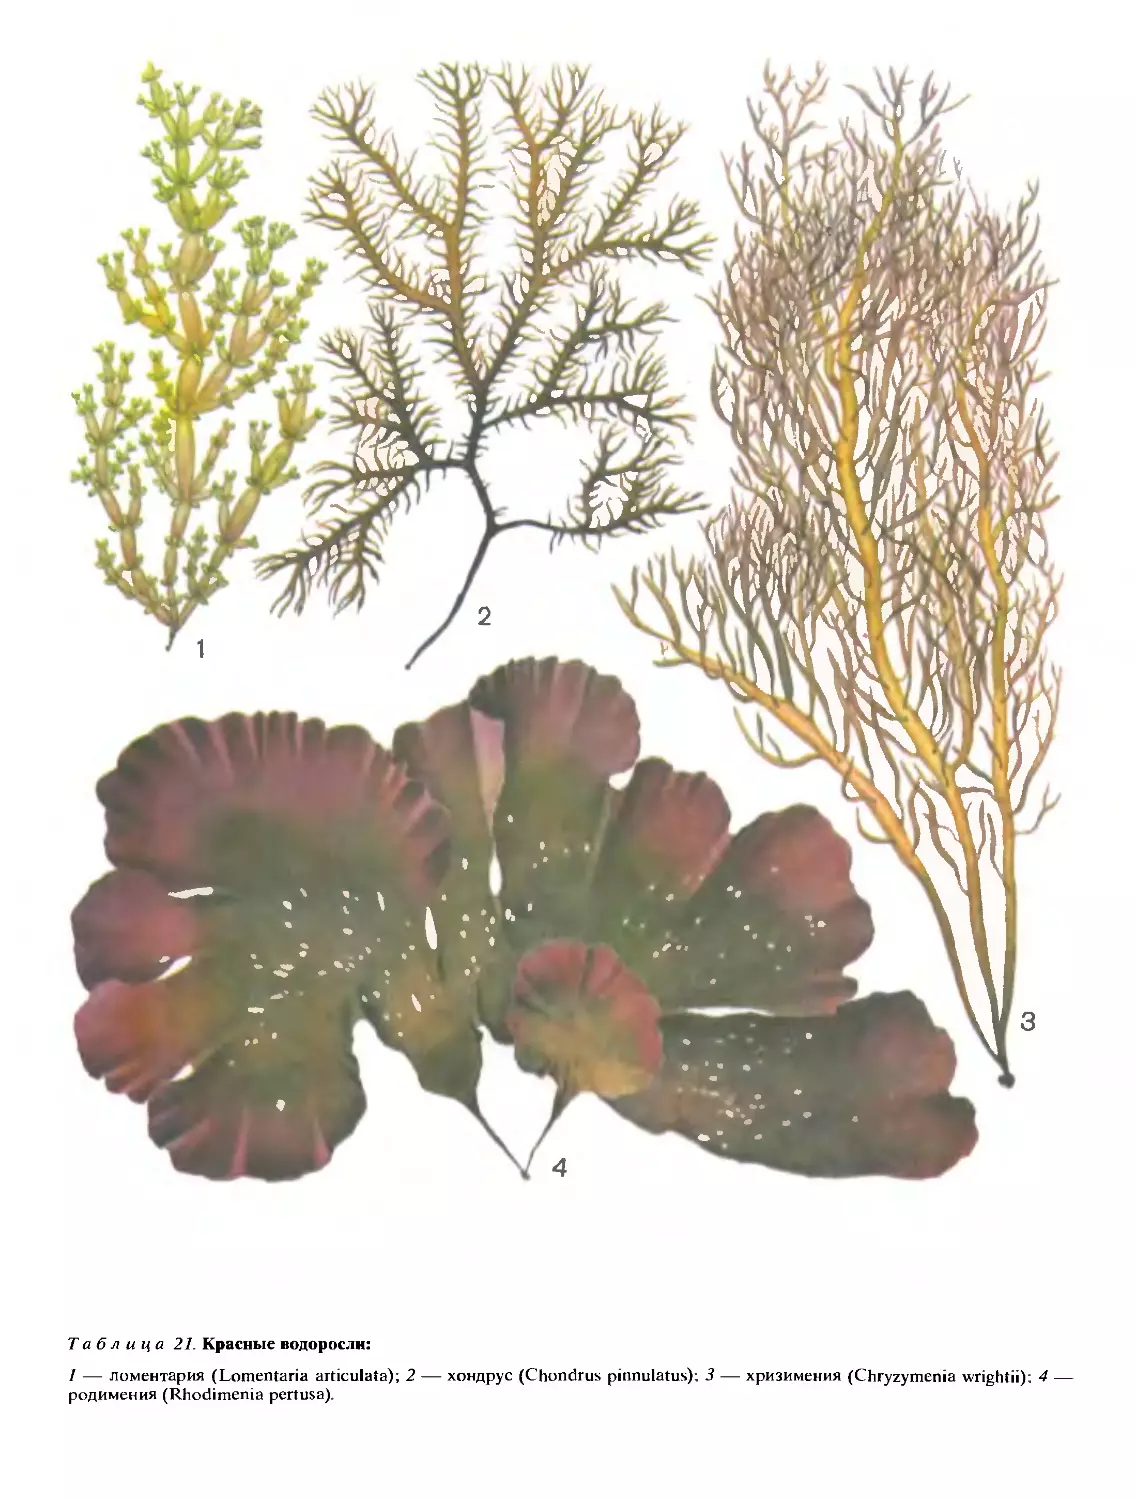 5 водорослей название. Семейство красных водорослей. Родимения продырявленная. Хондрус водоросль. Красные морские водоросли.